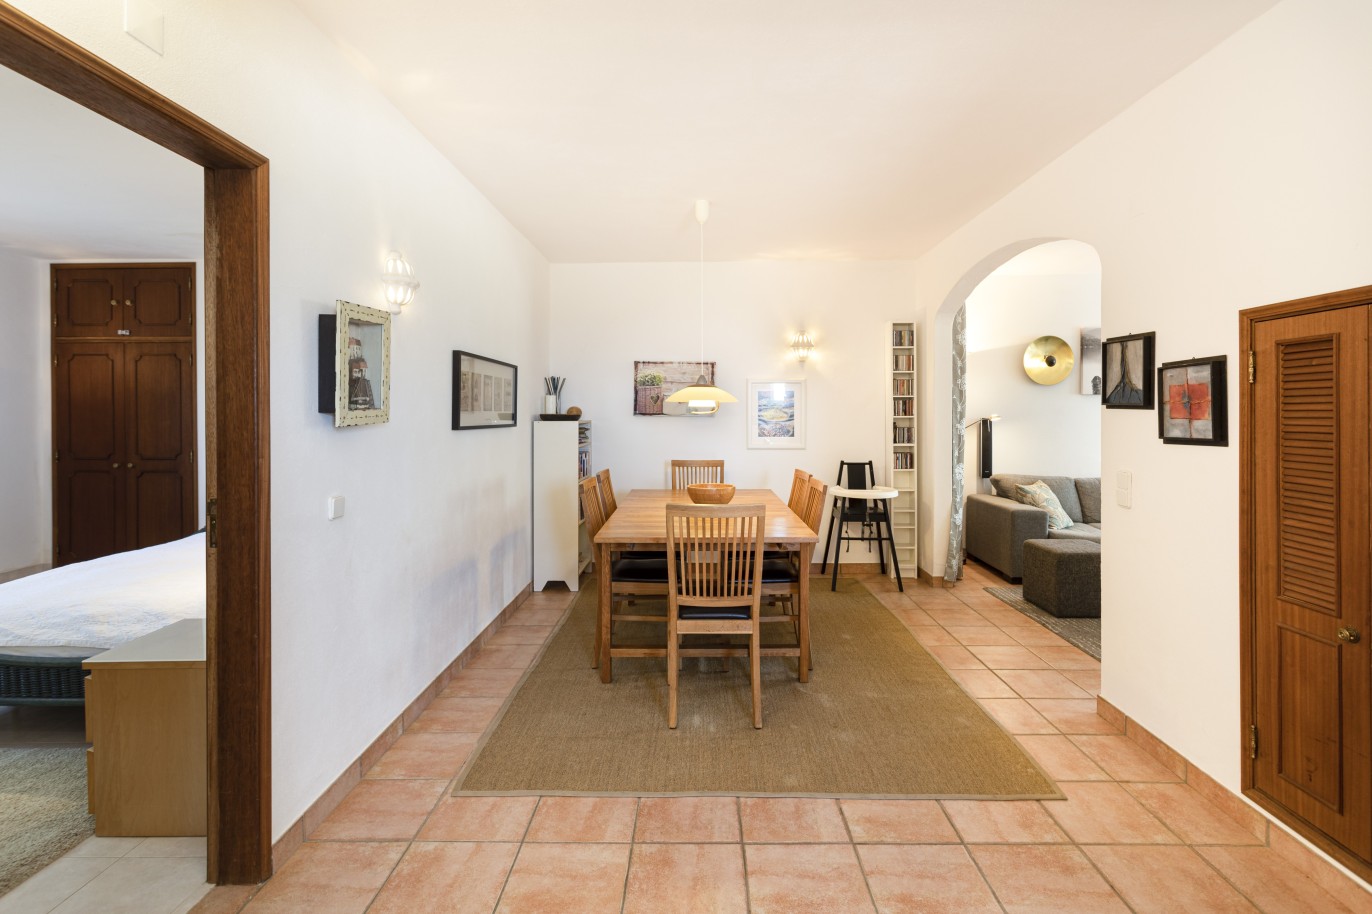 5 bedroom villa with pool and sea view, for sale in Estoi, Algarve_230482